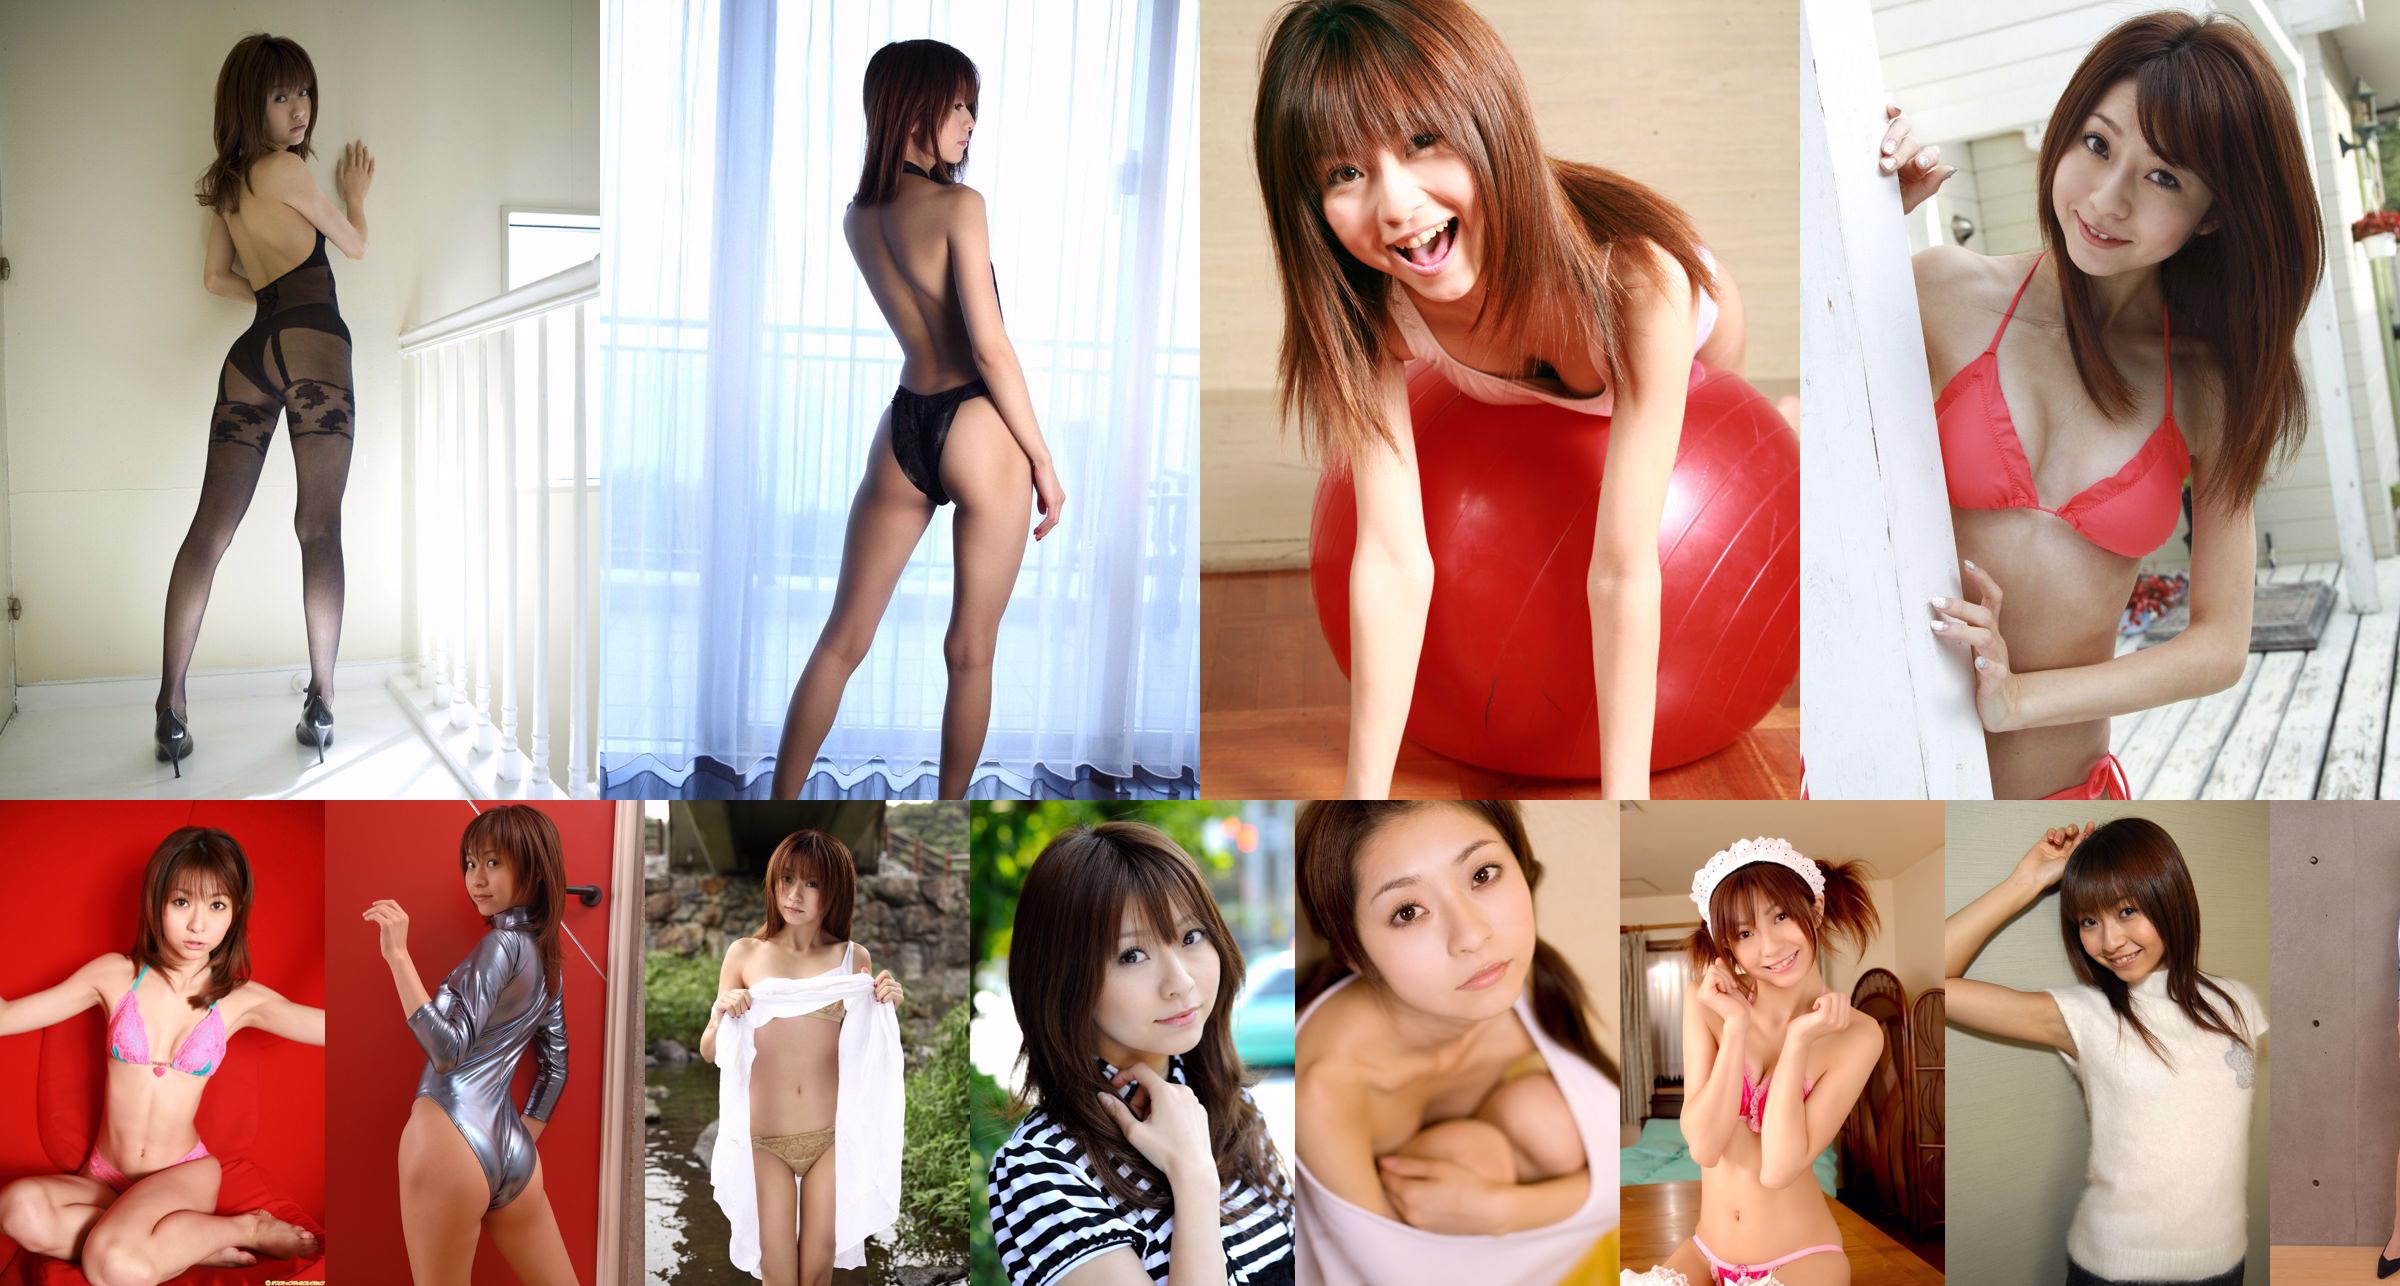 [BWH] BWH0144 Orihara Misaki "Chụp ảnh trong studio cho cô gái dễ thương" No.261dfb Trang 1